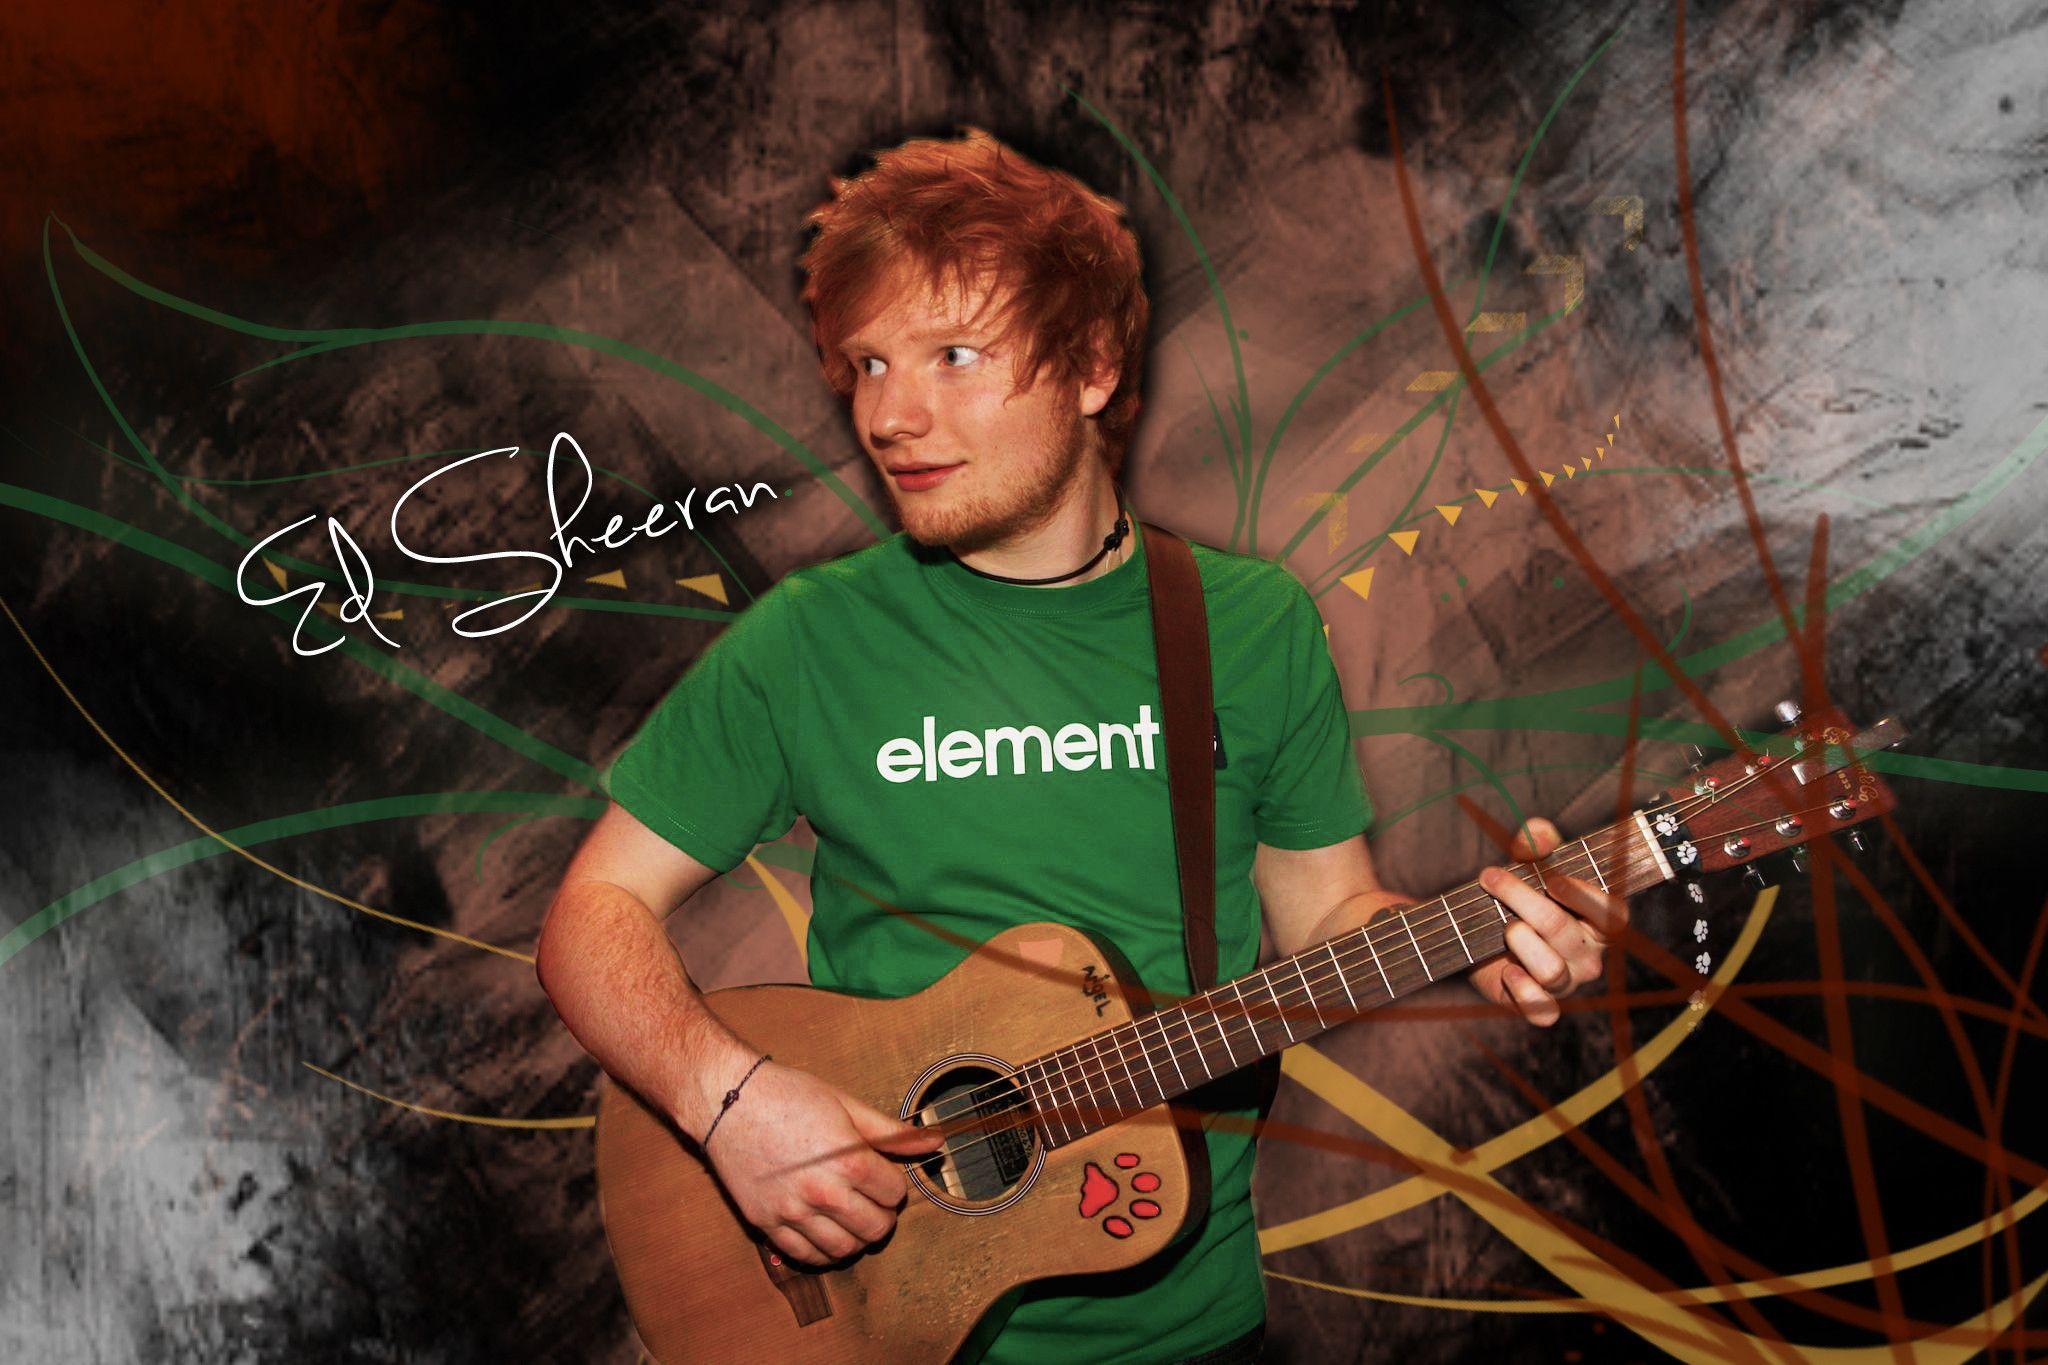 Ed Sheeran wallpapers HD backgrounds download desktop • iPhones